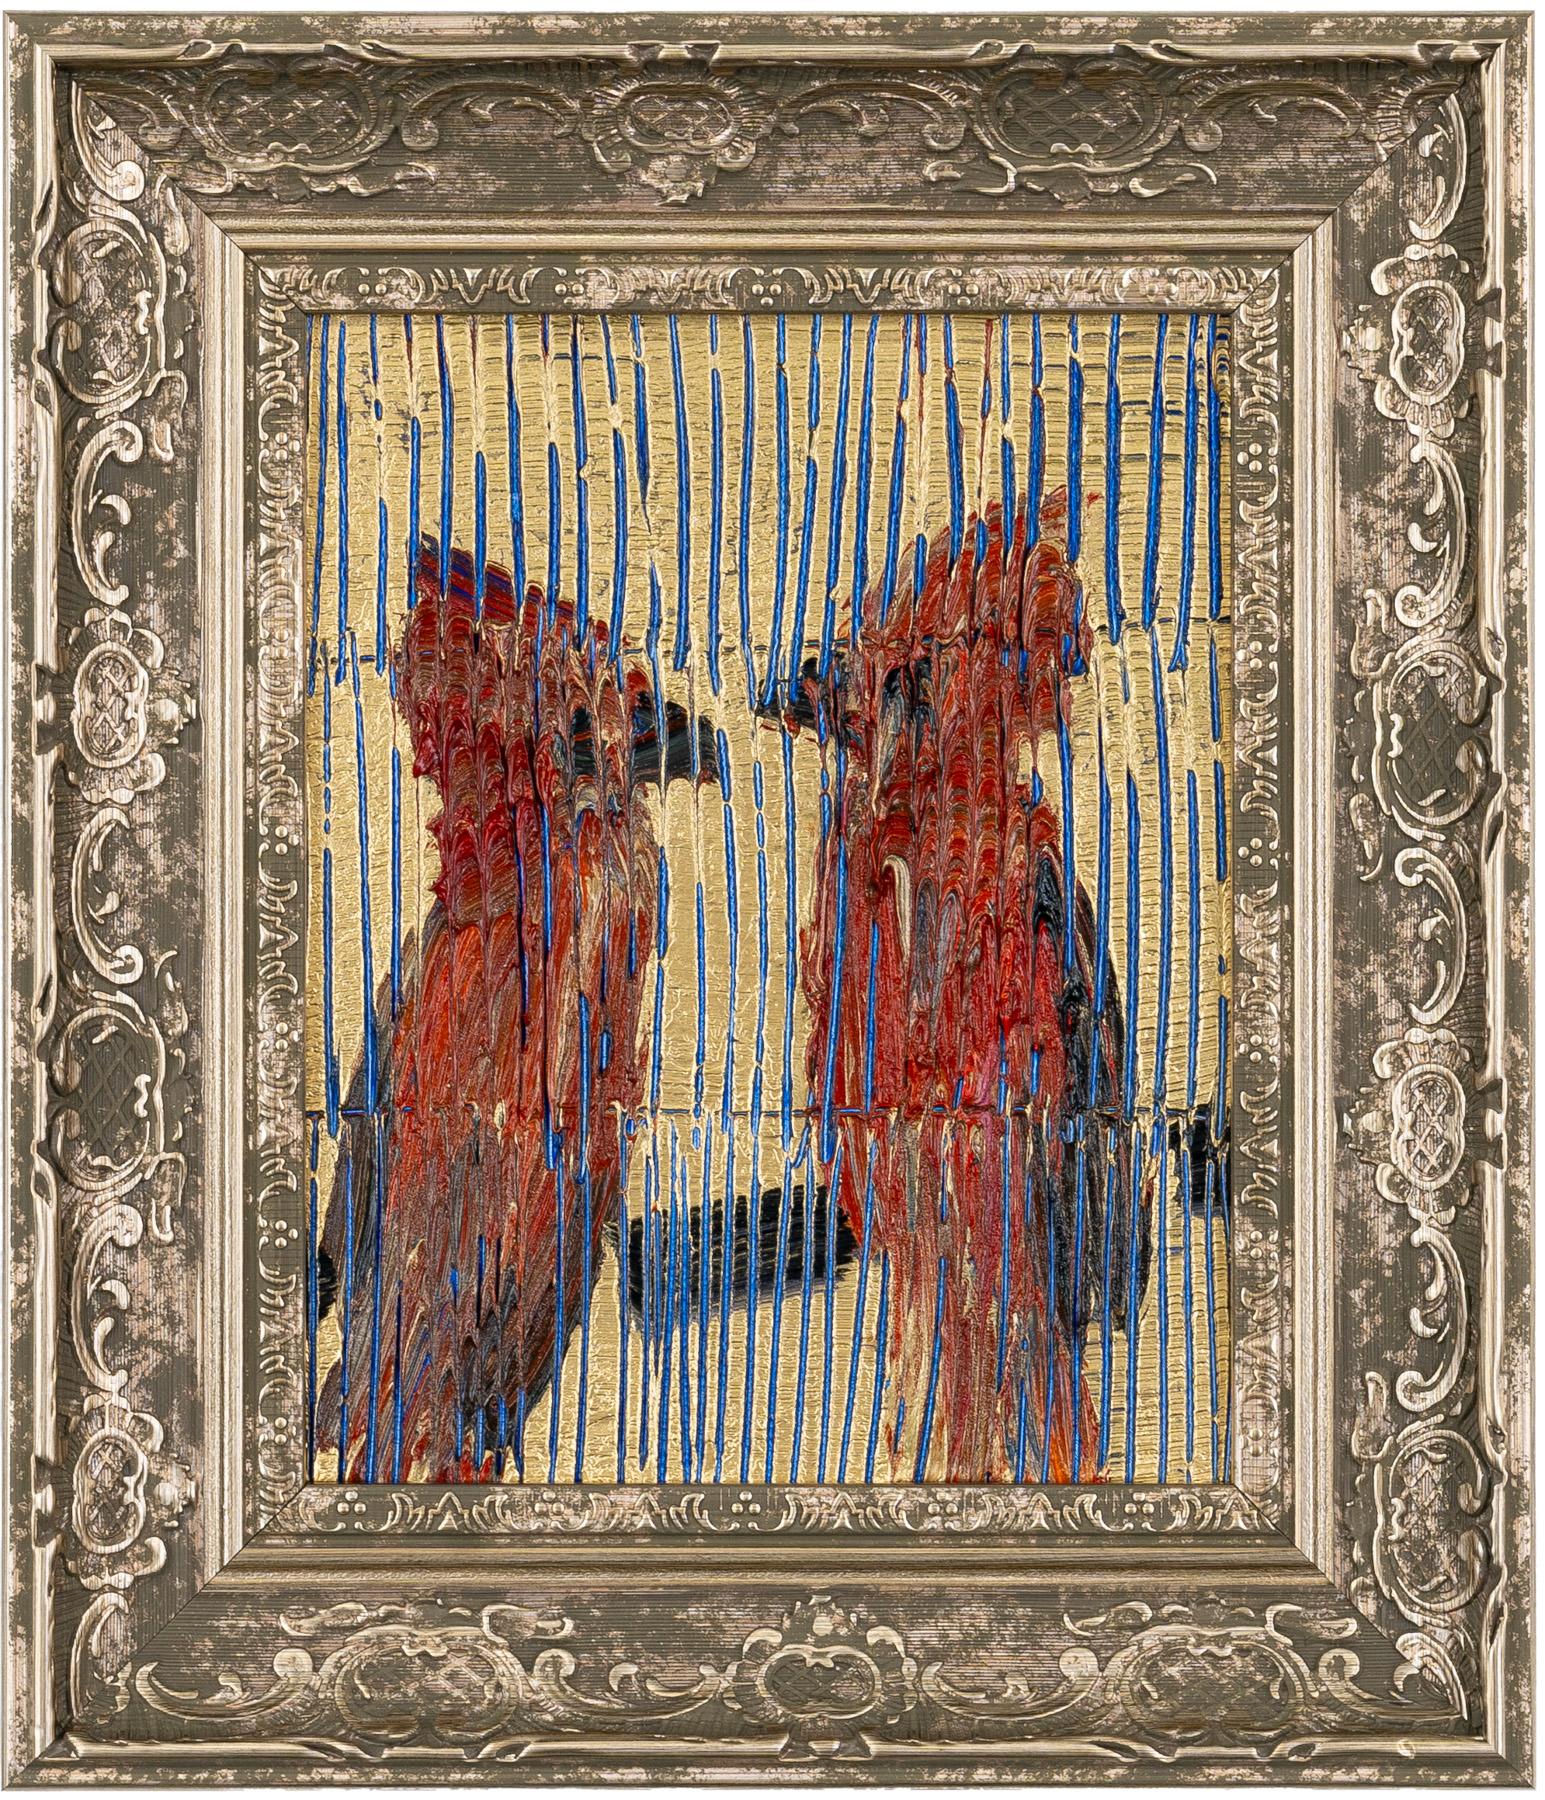 Hunt Slonem „ Cardinals“ Zwei rote Vögel 
Zwei rote Kardinalvögel sitzen auf einem Zweig vor einem goldmetallischen und blau geätzten Hintergrund. Gerahmt in einem antiken Rahmen.

Ungerahmt: 10 x 8 Zoll
Gerahmt: 14,5 x 12,5 Zoll
*Gemälde ist